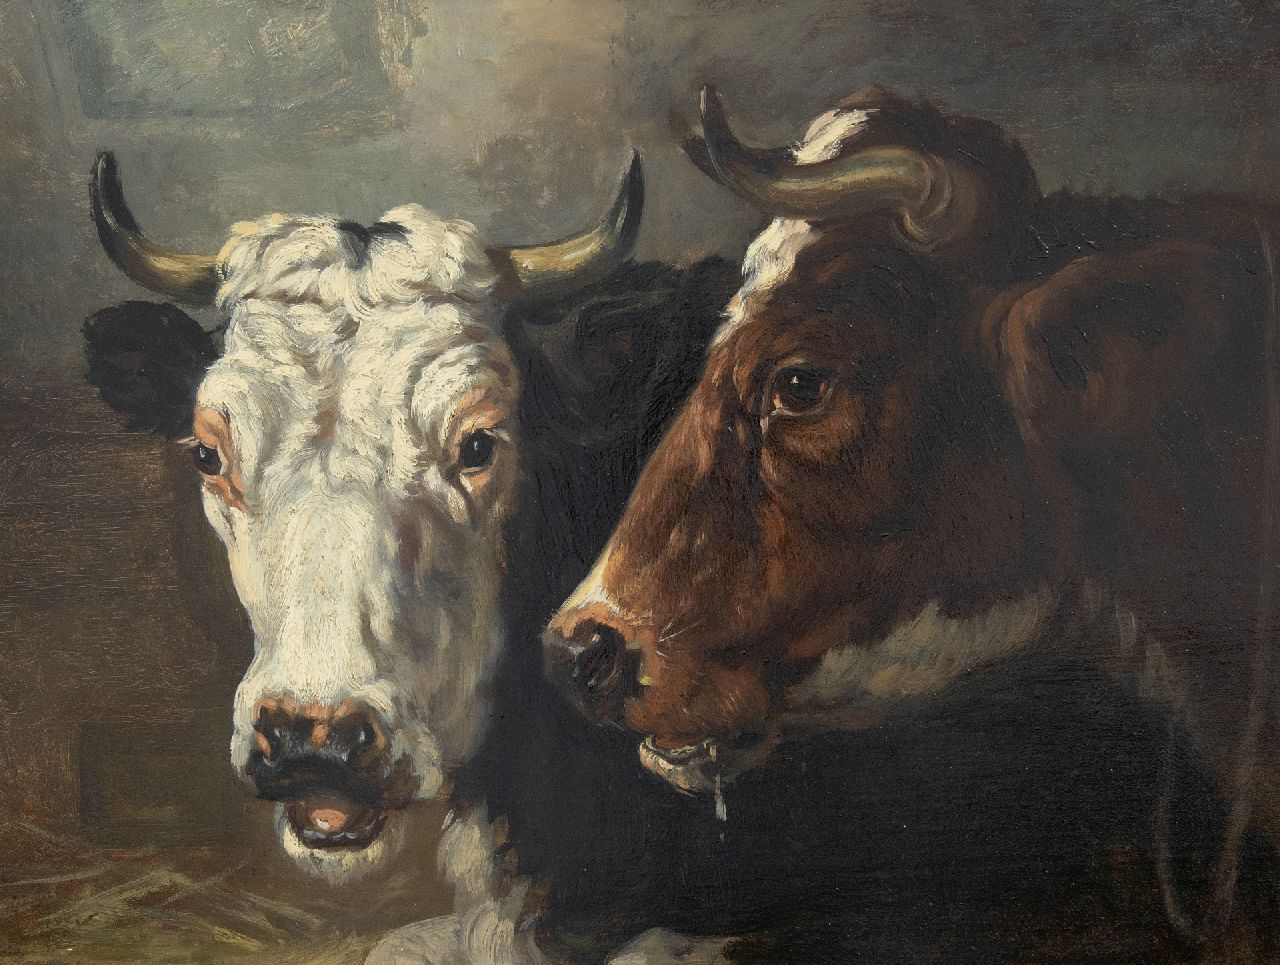 Richard Burnier | Twee koeienkoppen, olieverf op paneel, 32,3 x 45,0 cm, gesigneerd verso